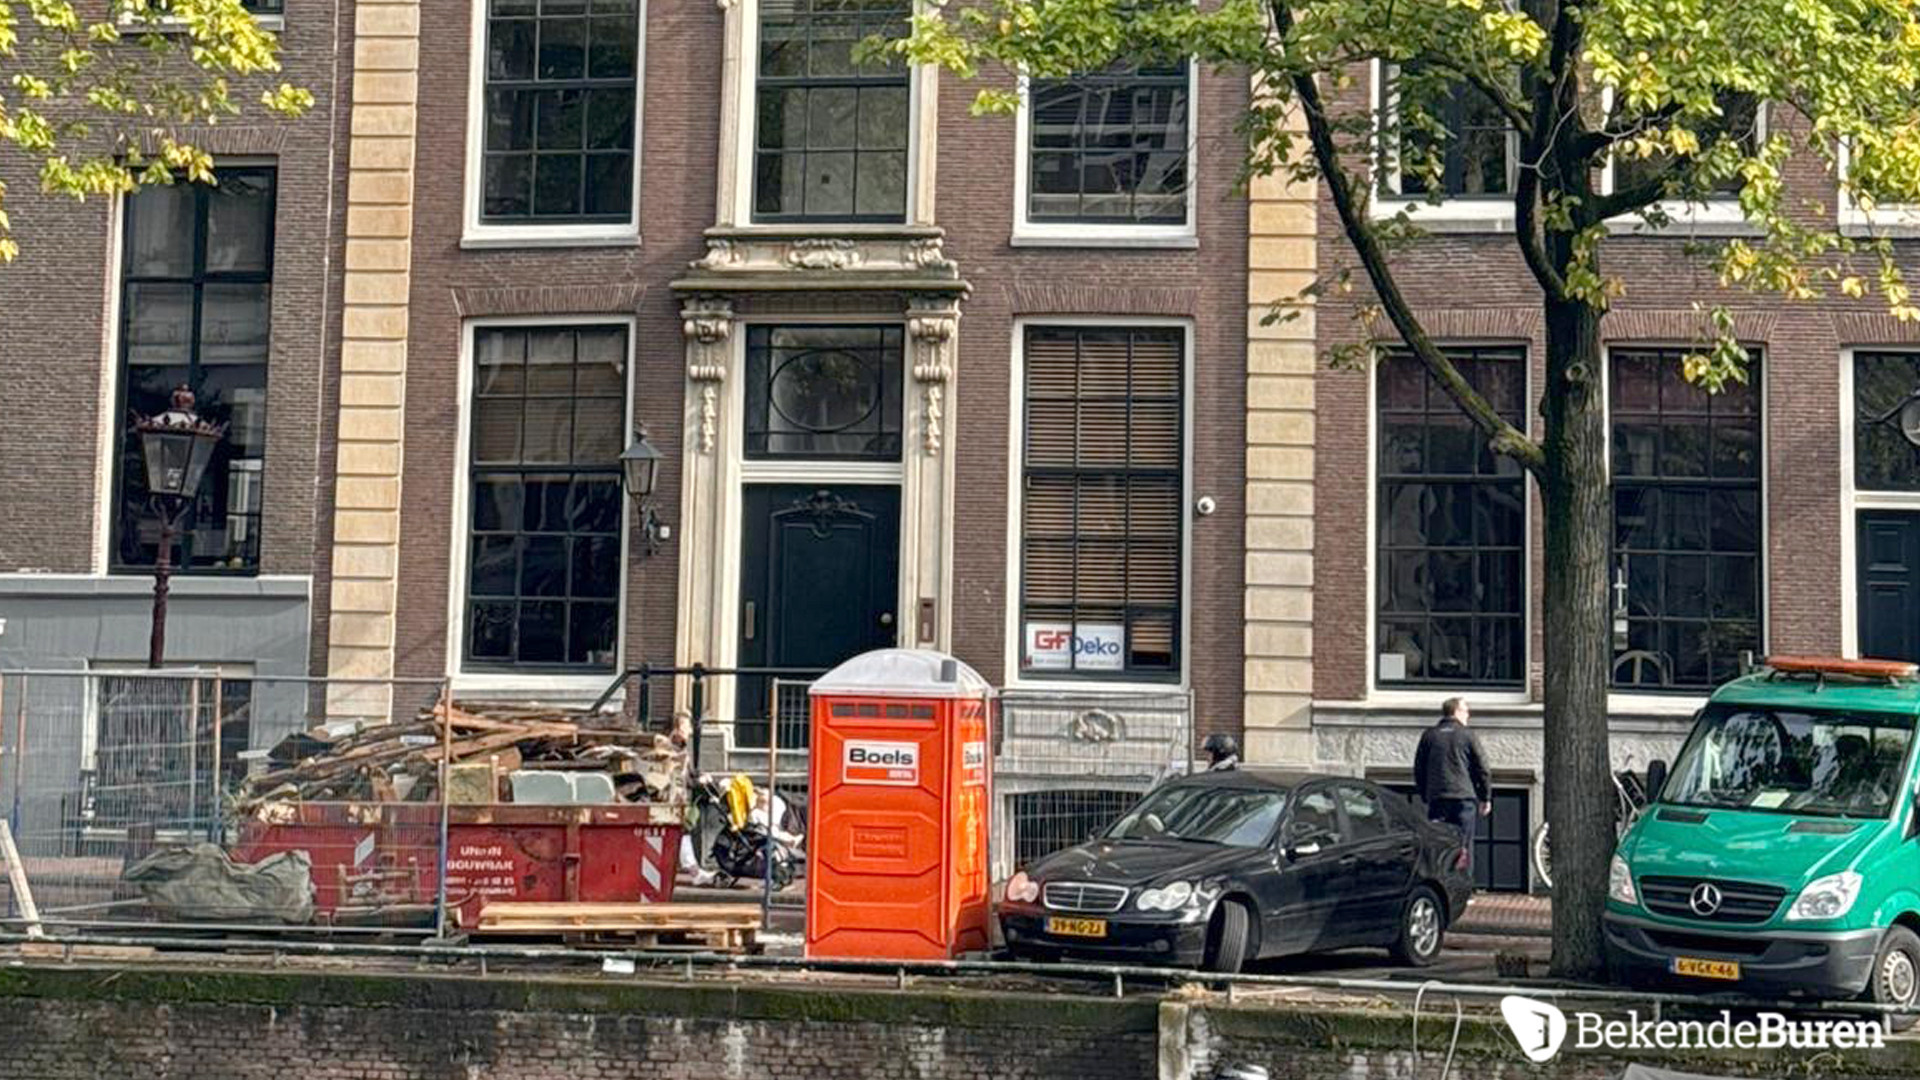 Lieke van Lexmond en Bas van Veggel kopen miljoenenpand aan de Keizersgracht in Amsterdam. Zie foto's 6